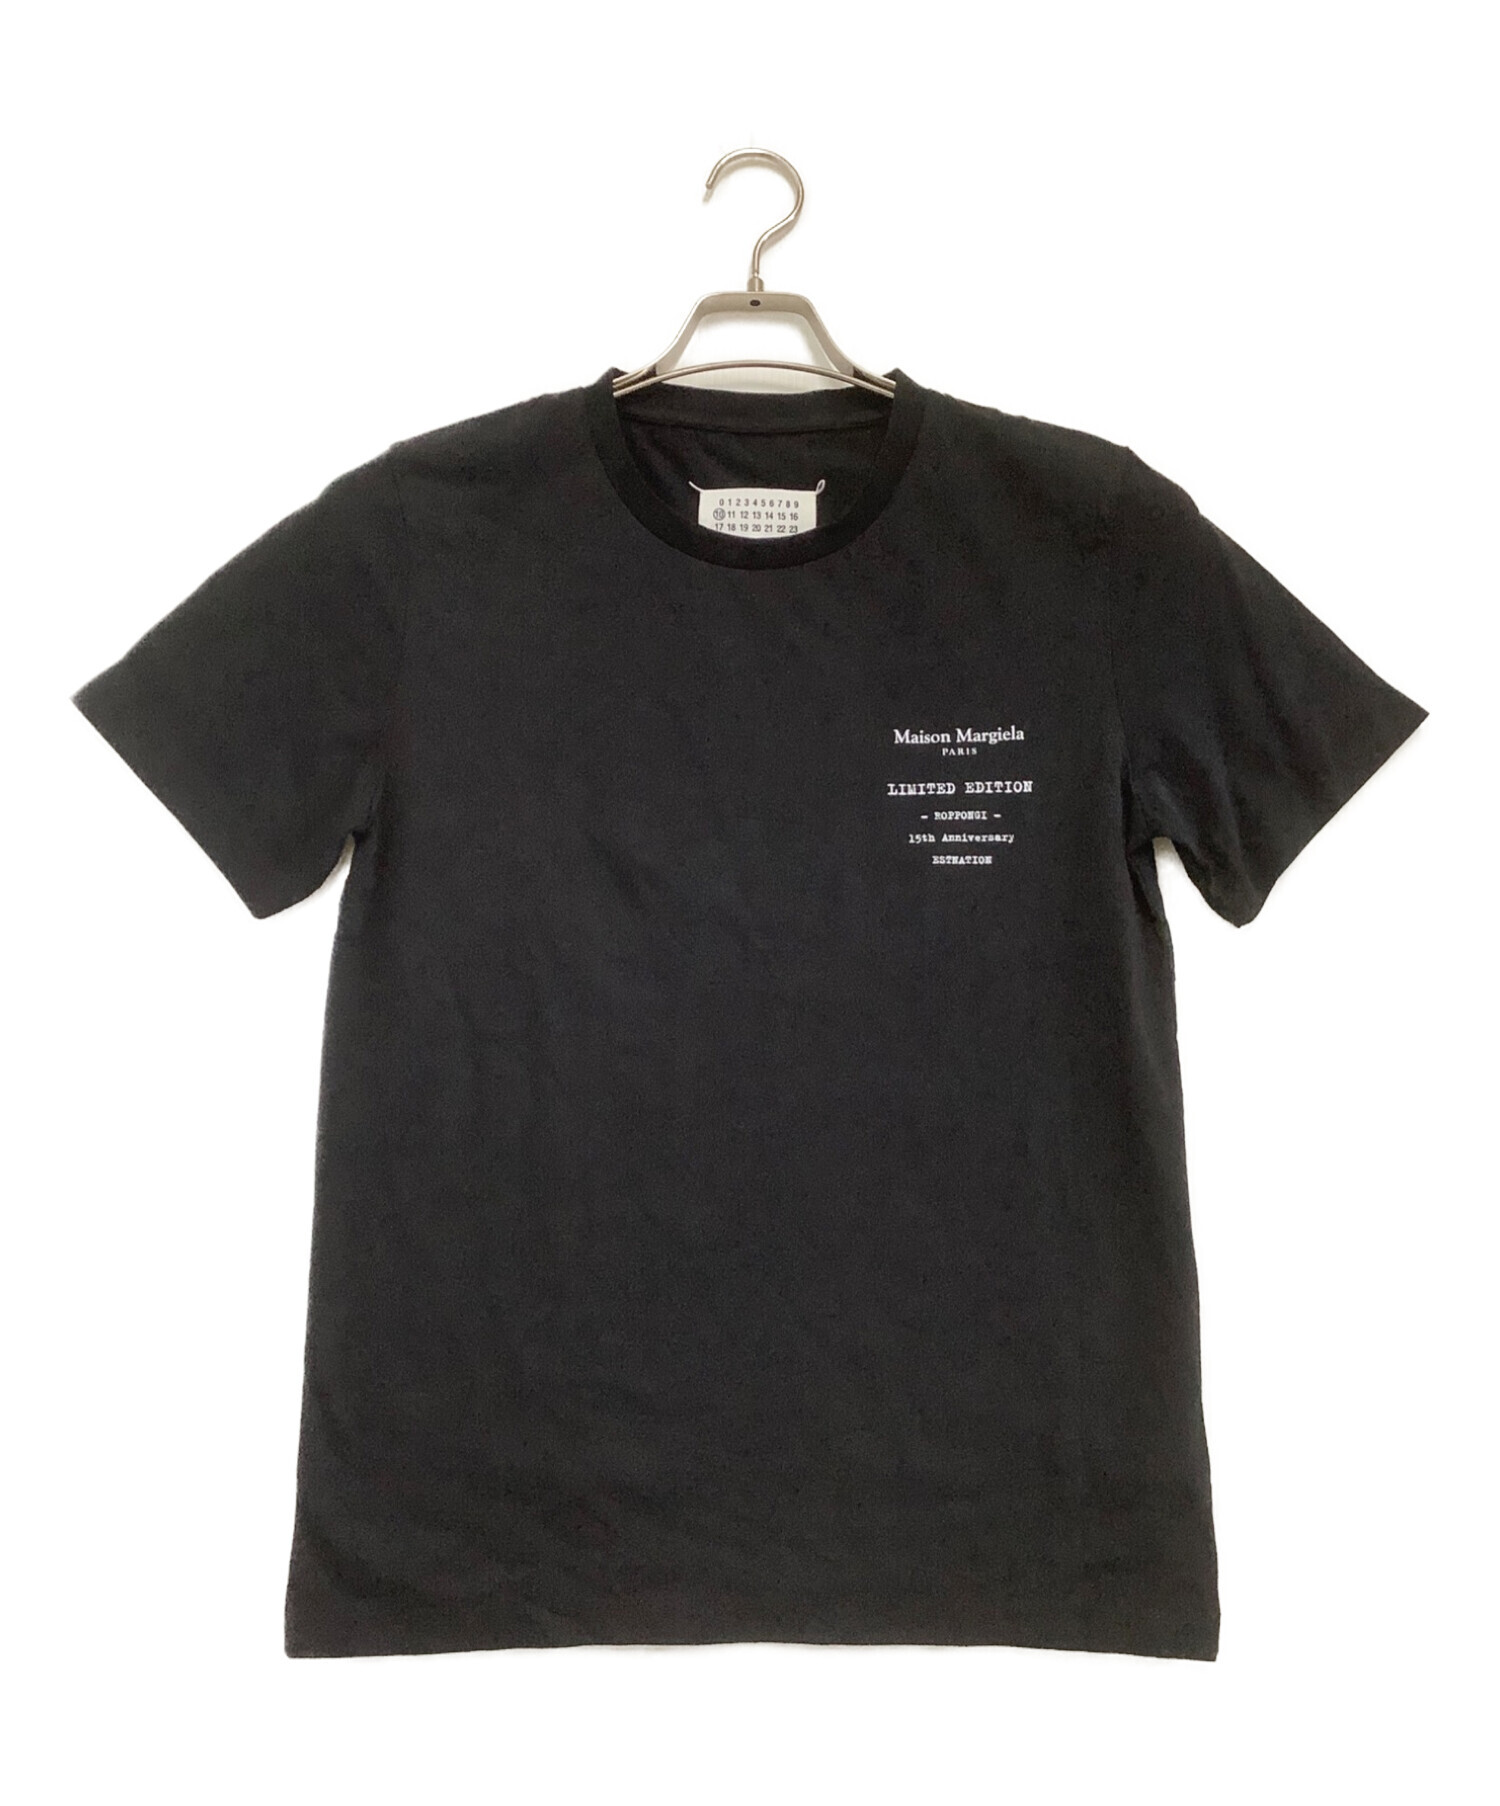 Maison Margiela (メゾンマルジェラ) Tシャツ ブラック サイズ:XS